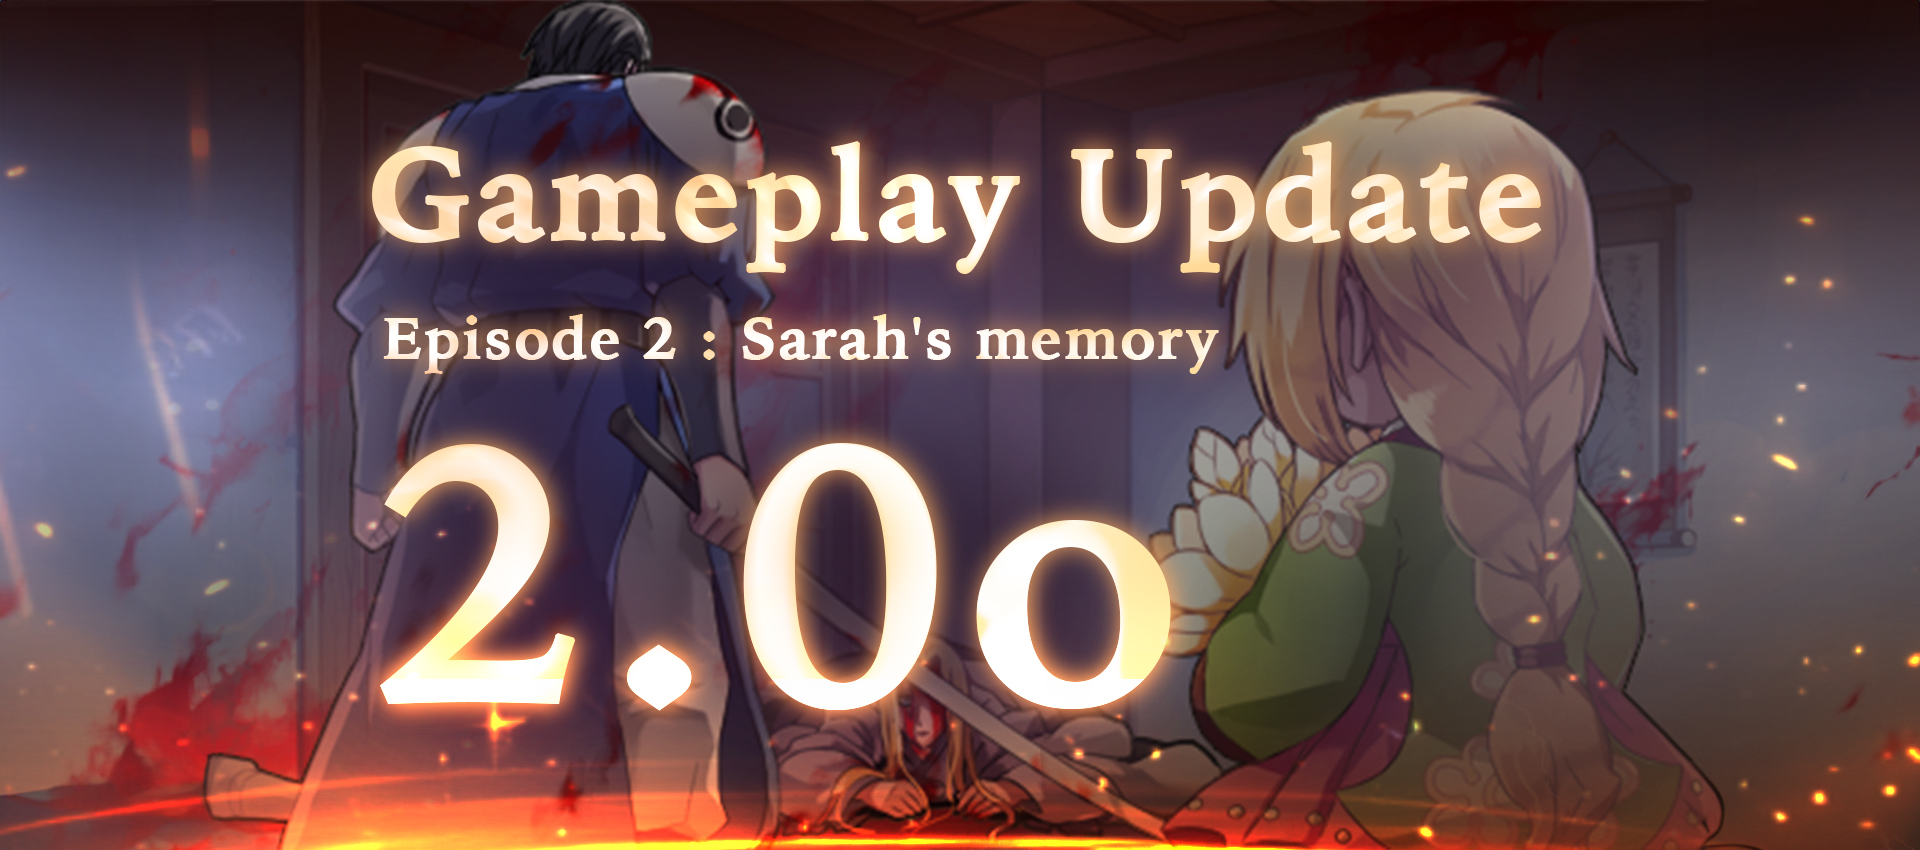 Gameplay Update 2.0O : Sarah’s memory !!